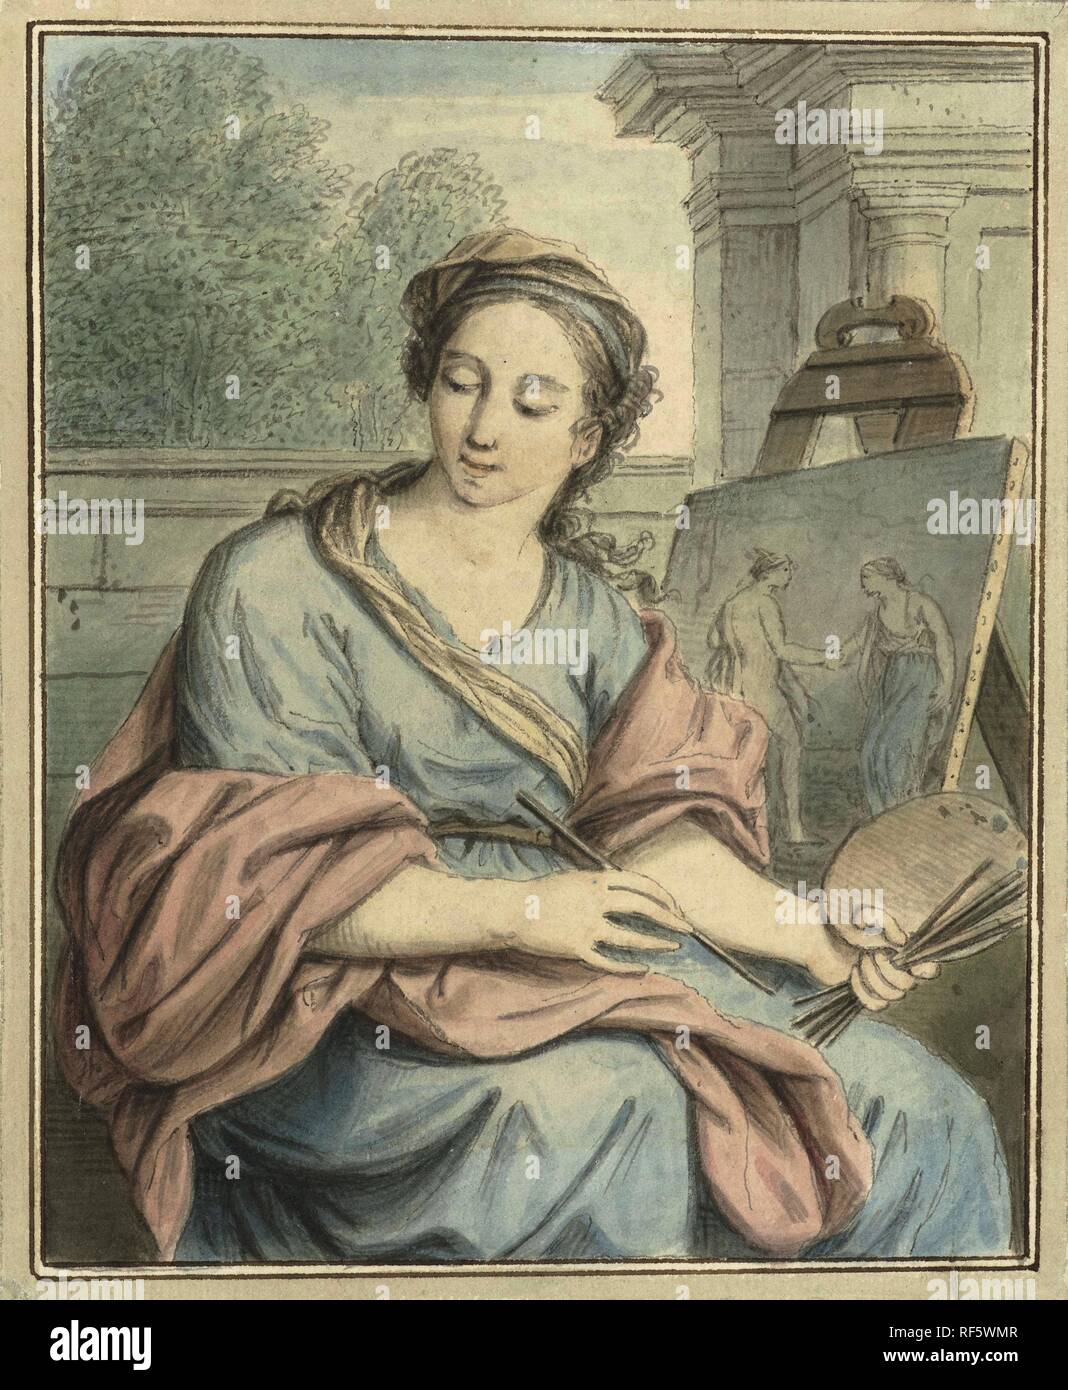 La pittura. Relatore per parere: Louis Fabritius Dubourg. Dating: 1703 - 1775. Misurazioni: h 165 mm × W 136 mm. Museo: Rijksmuseum Amsterdam. Foto Stock